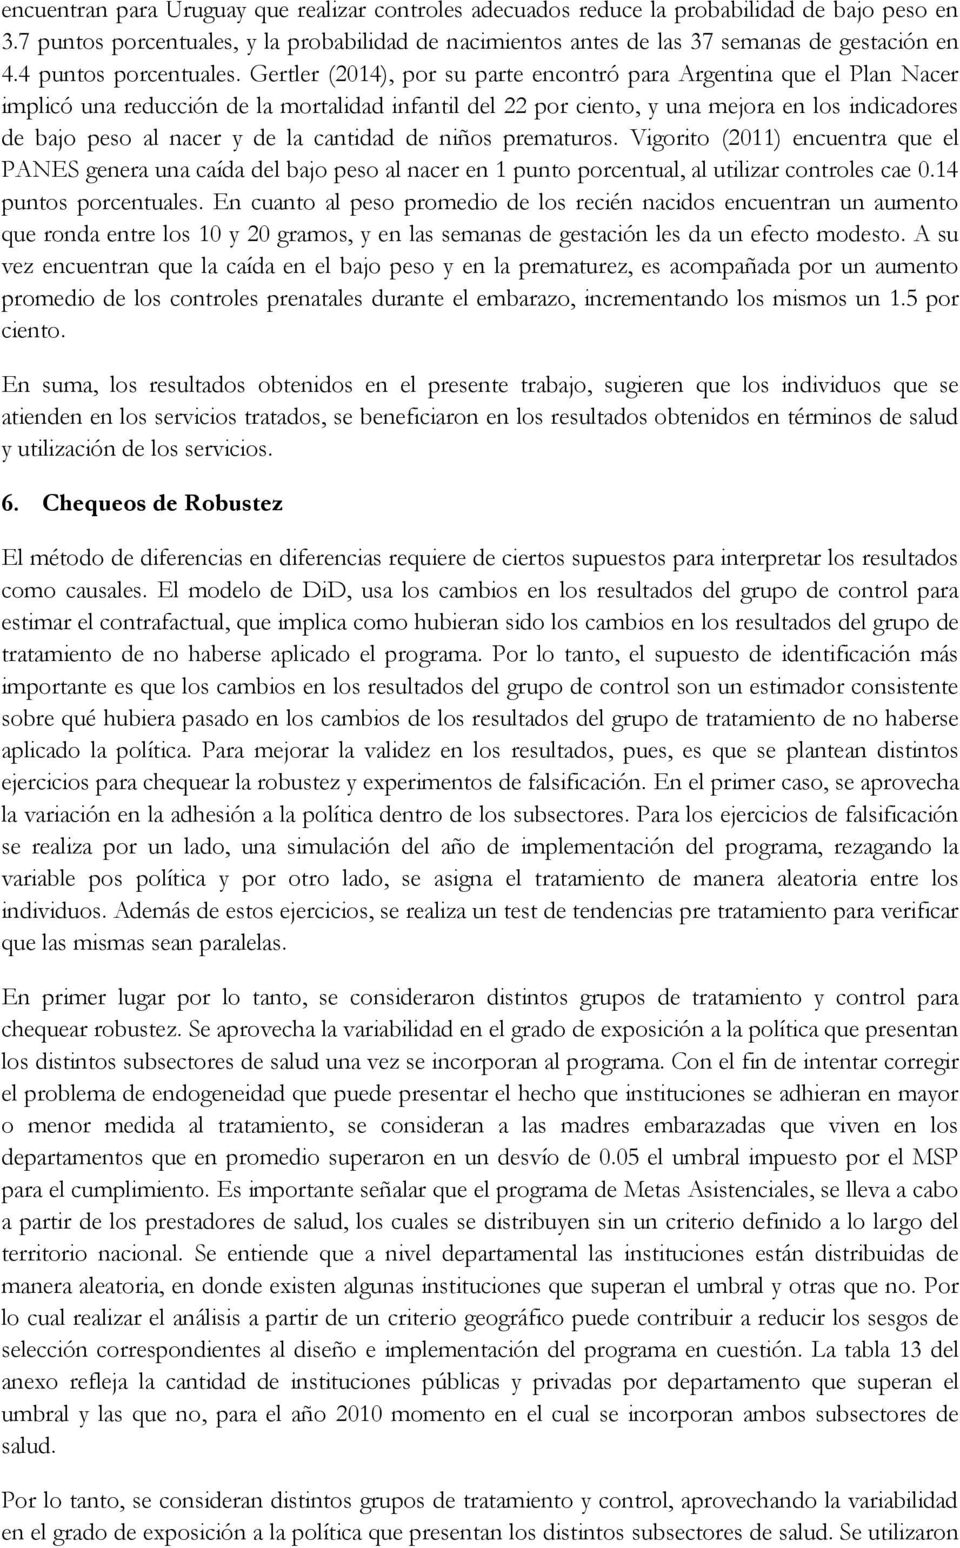 Gertler (2014), por su parte encontró para Argentina que el Plan Nacer implicó una reducción de la mortalidad infantil del 22 por ciento, y una mejora en los indicadores de bajo peso al nacer y de la